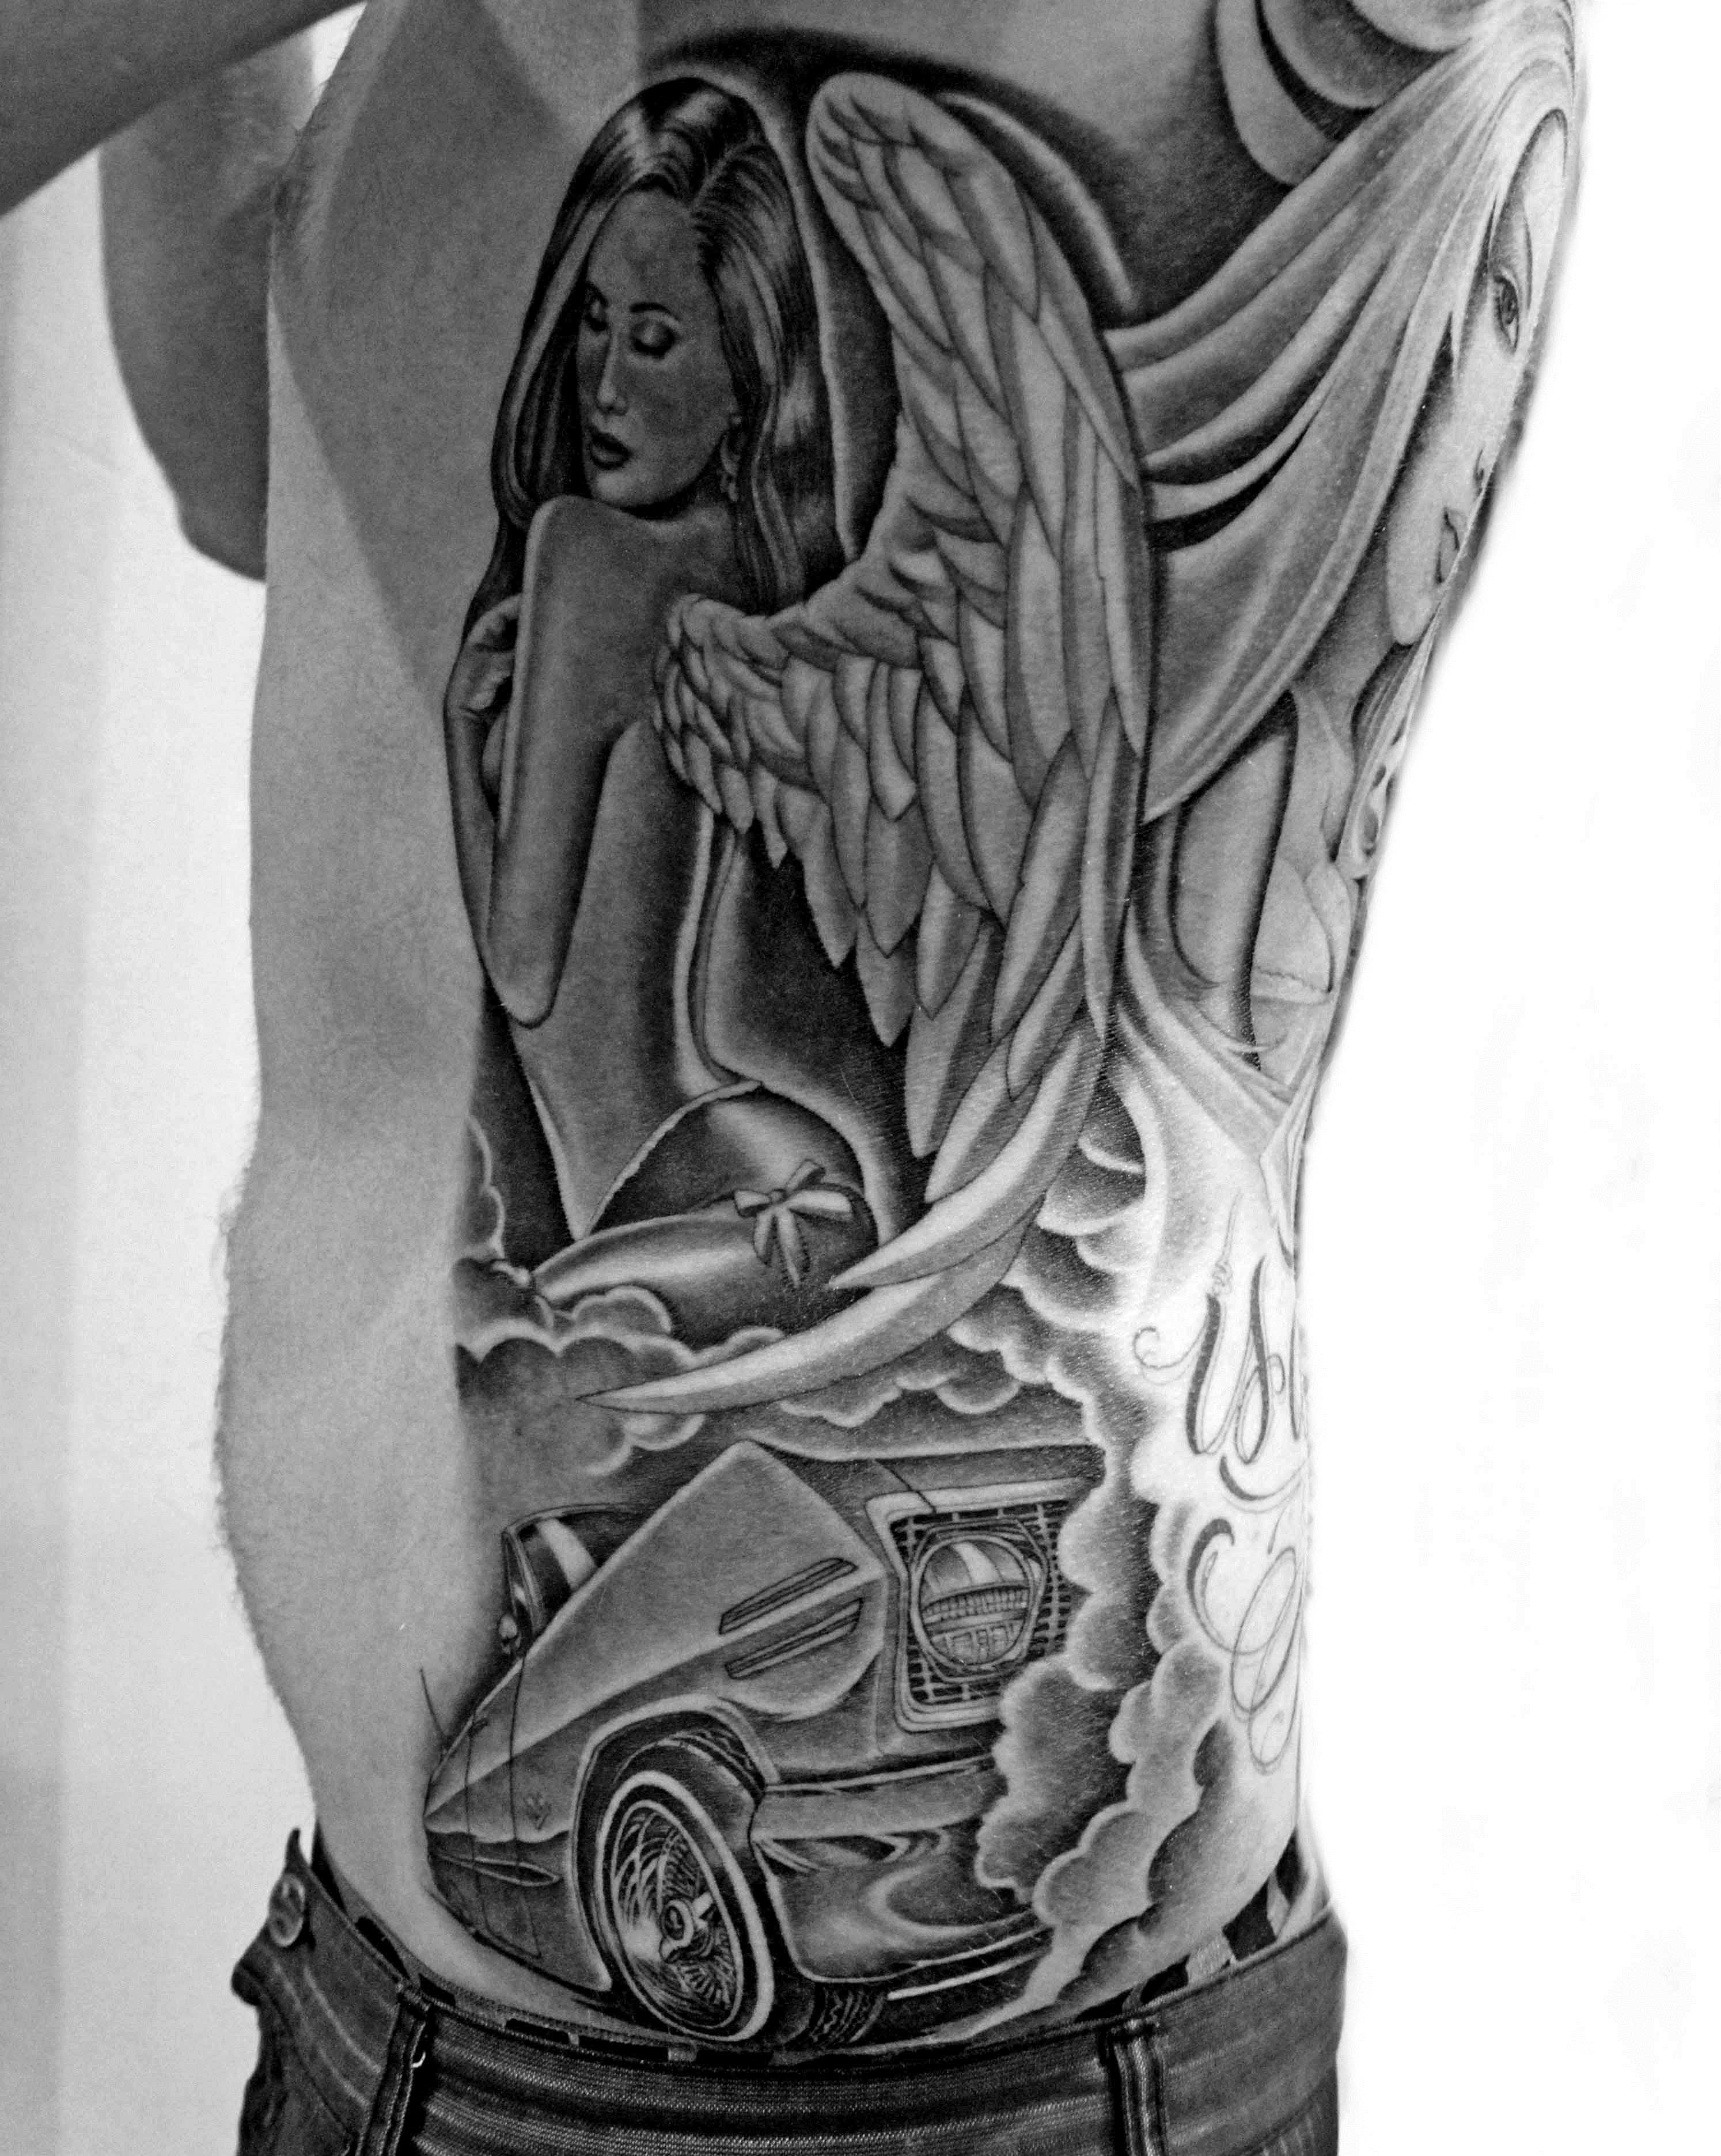 Tatuagem nas costelas cara no estilo chicano - anjo